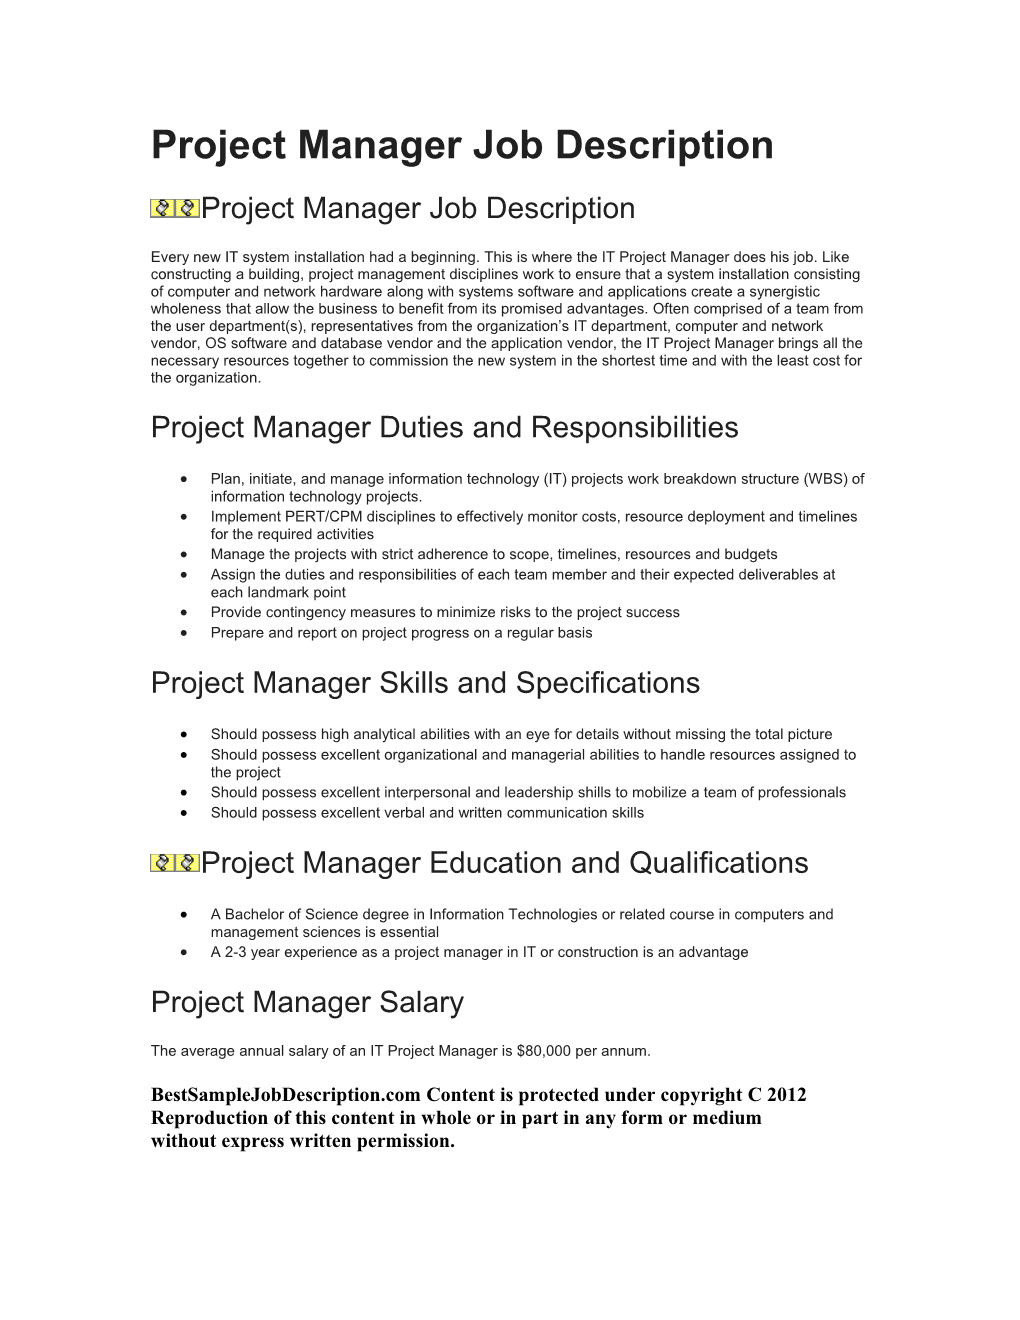 Project Manager Job Description s1